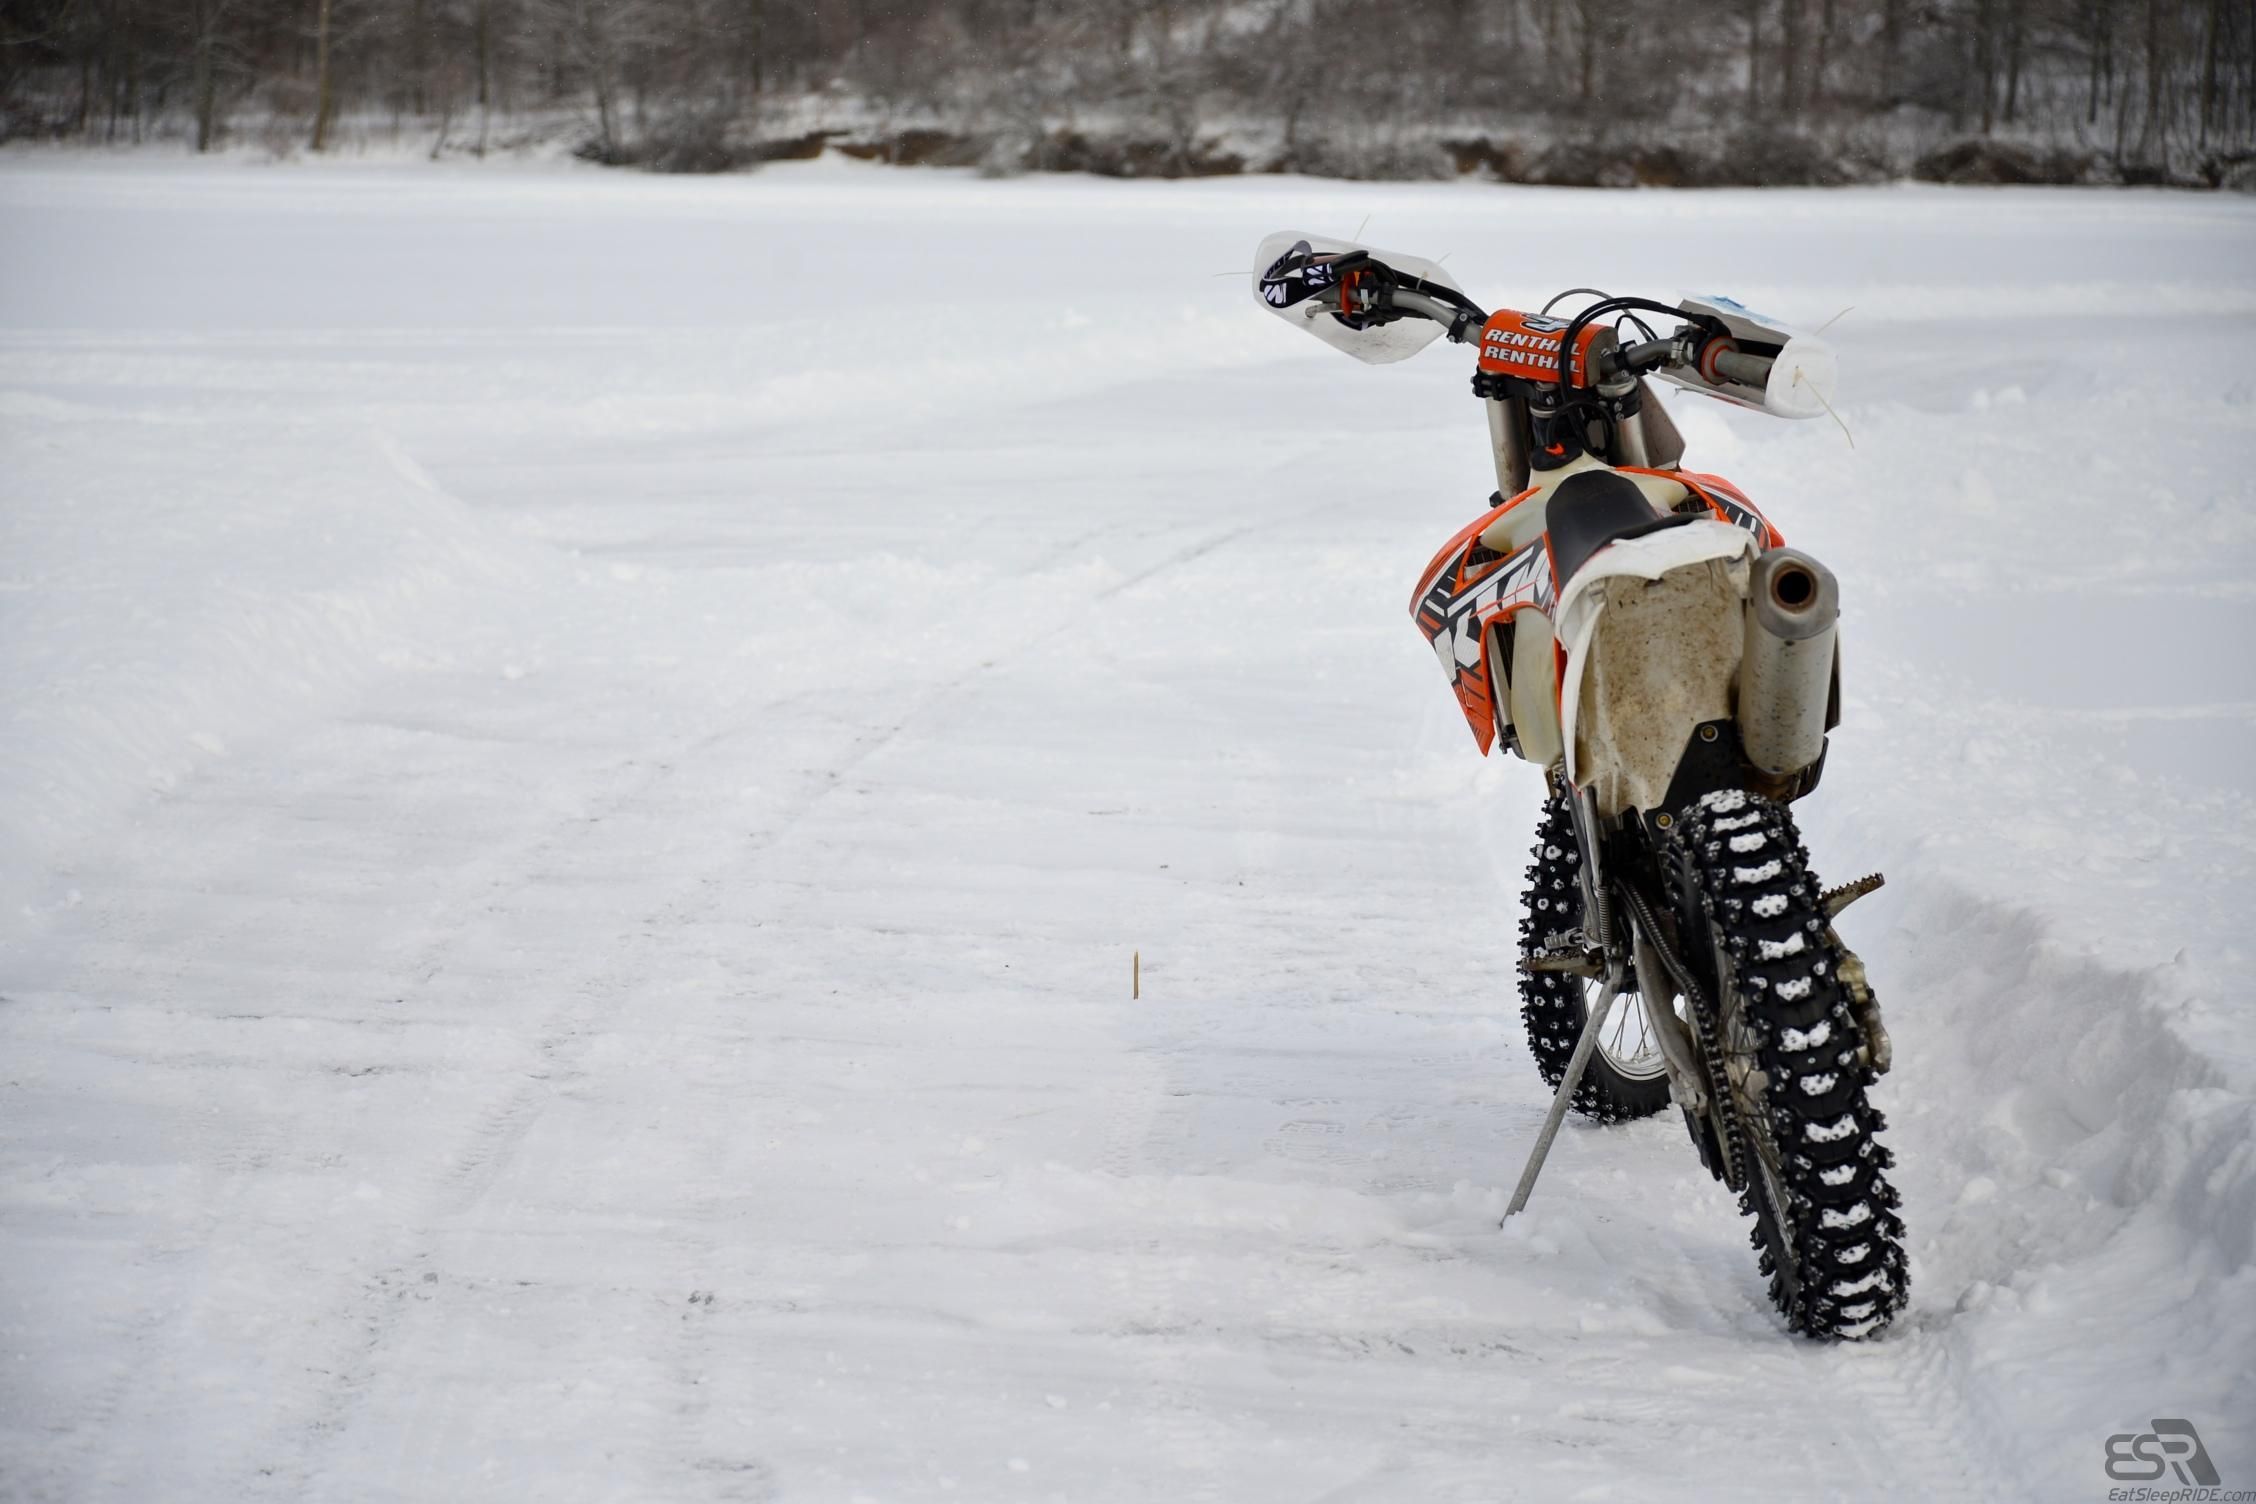 Jugs KTM - Ice riding